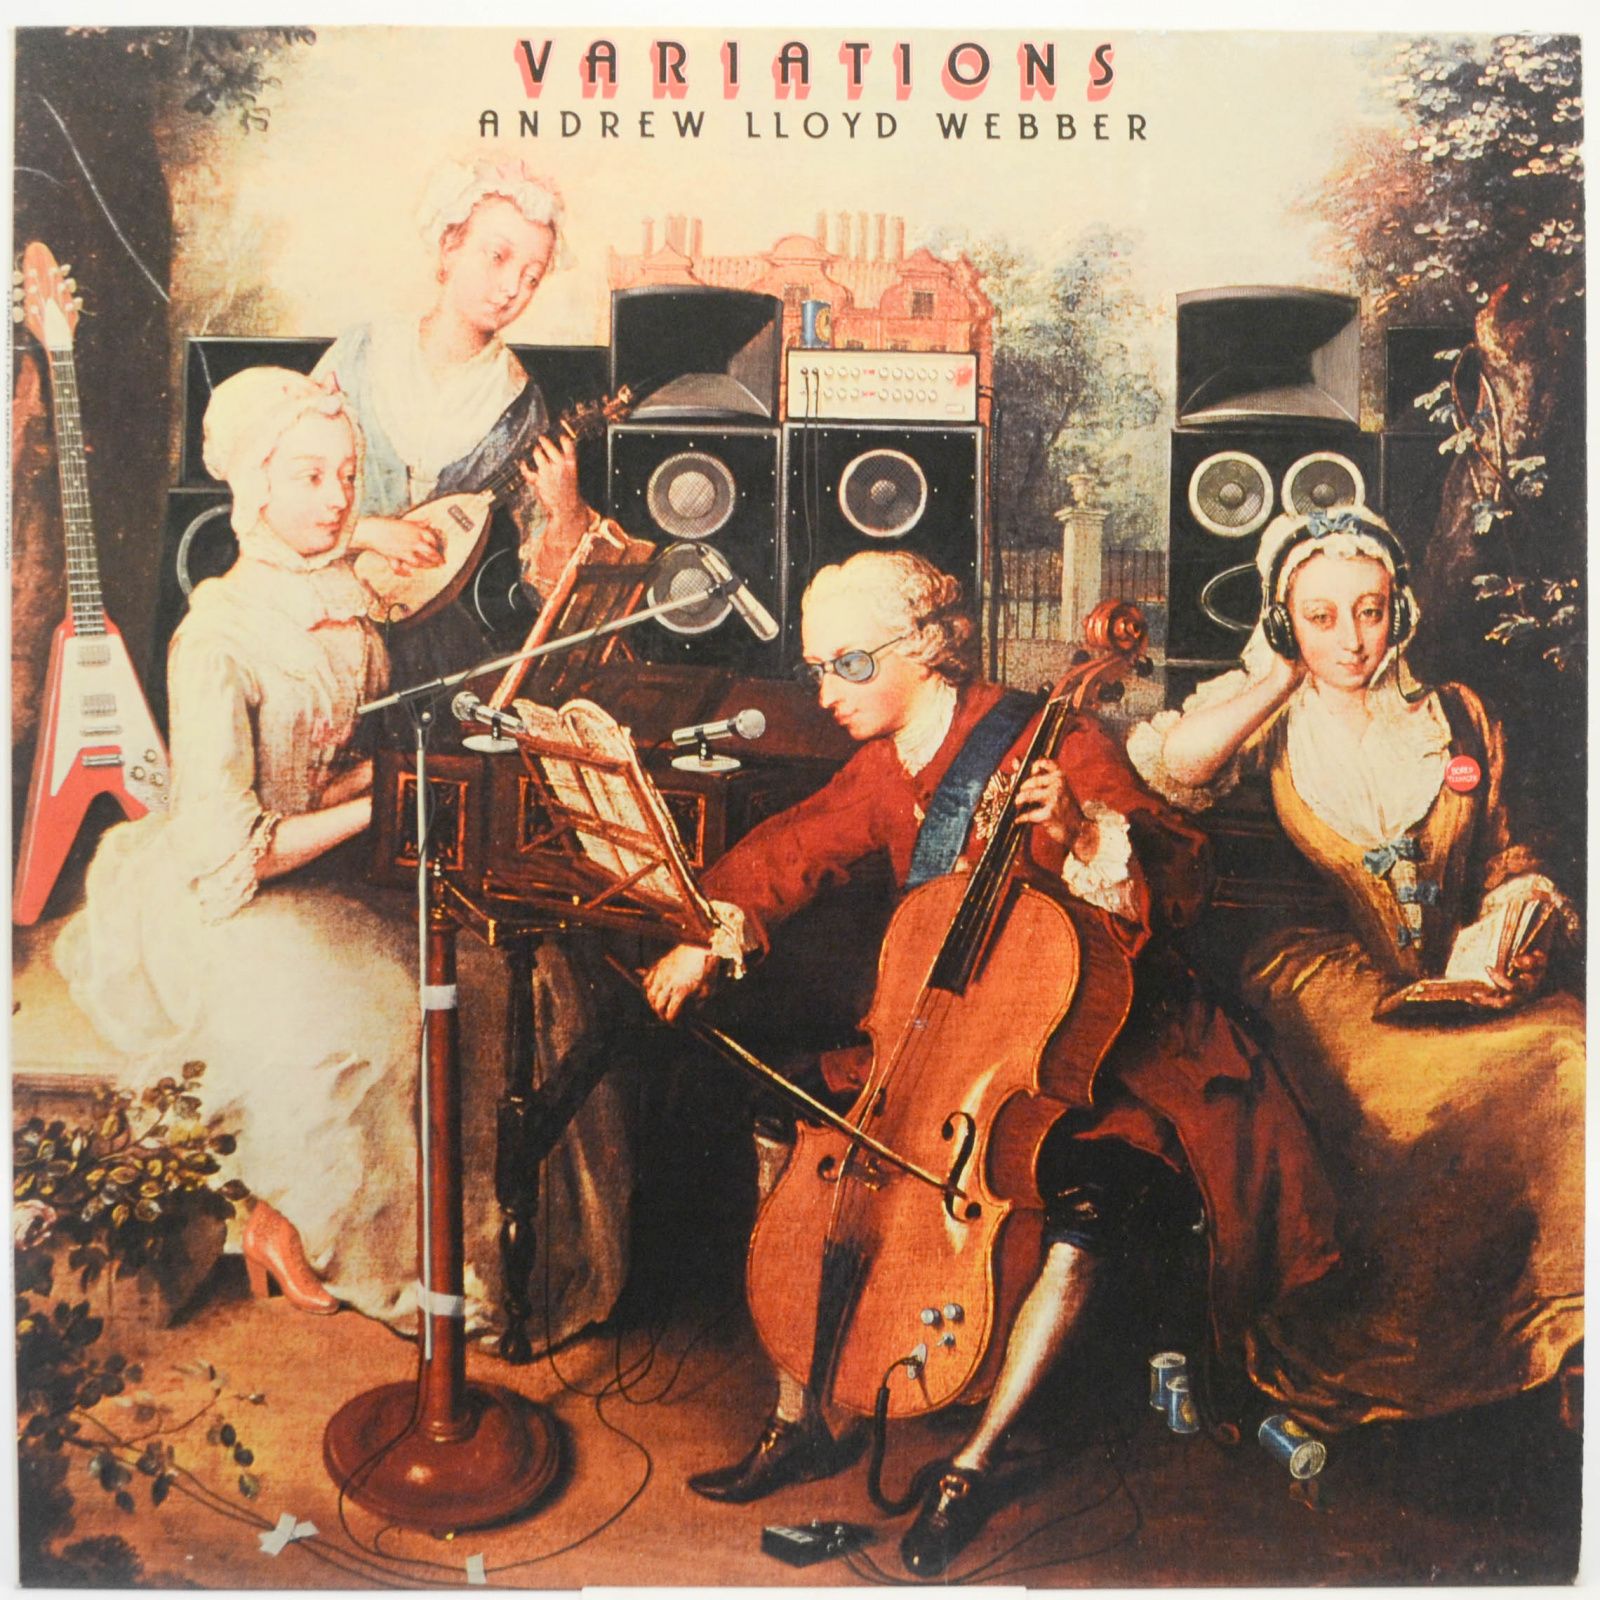 Andrew Lloyd Webber — Variations, 1978